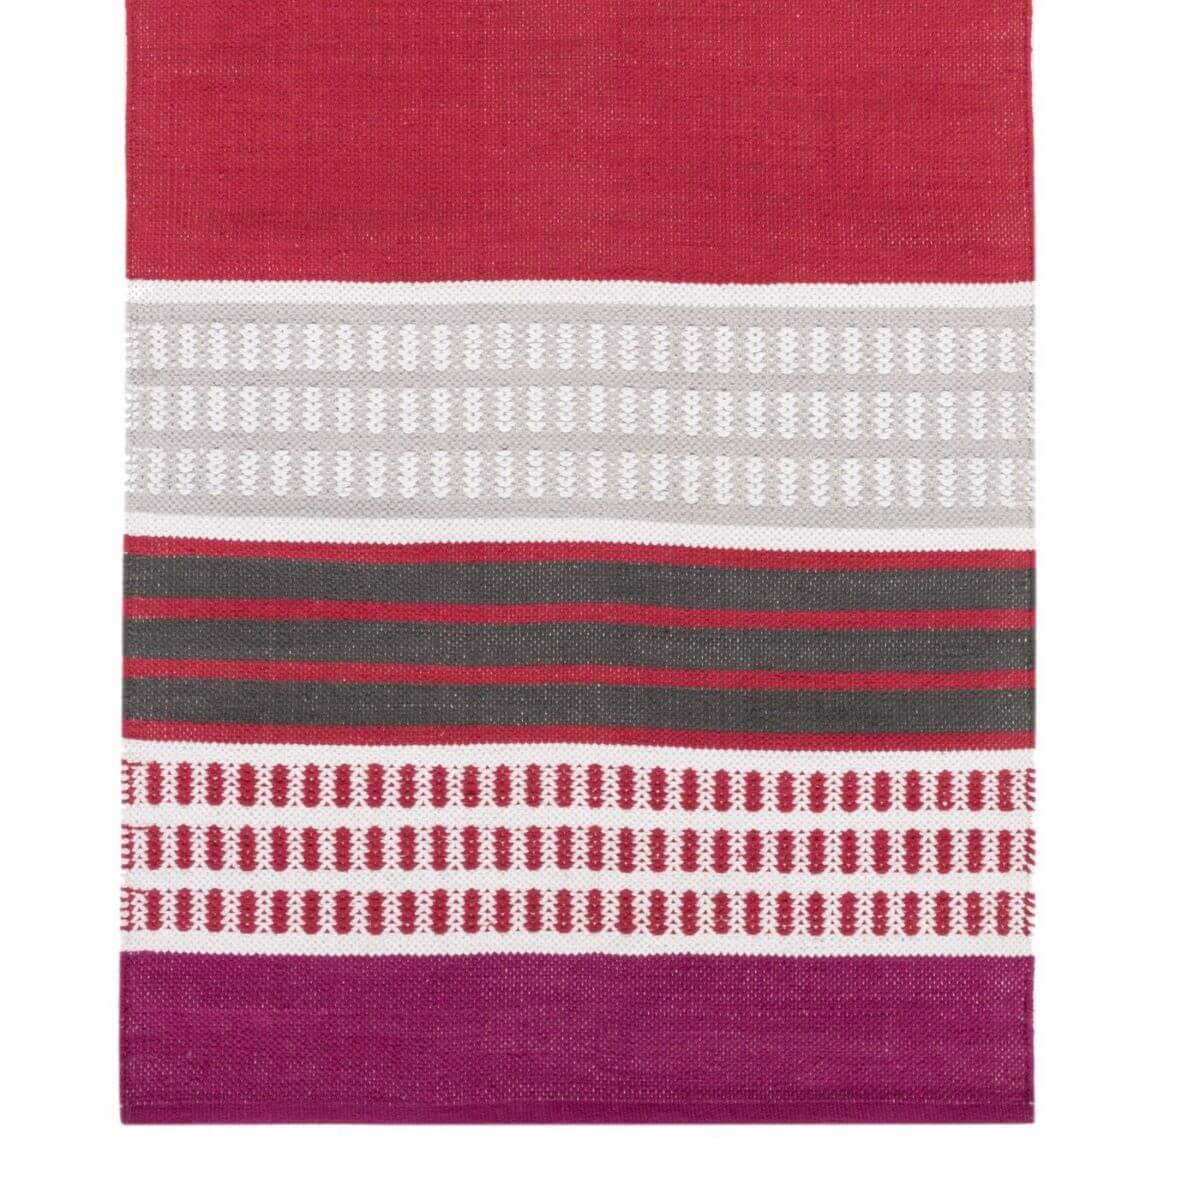 Dywan skandynawski czerwony 80x150 PALLAS. Geometryczny wzór w czerwone pasy i paski dywanu z bawełny do nowoczesnej sypialni w stylu skandynawskim